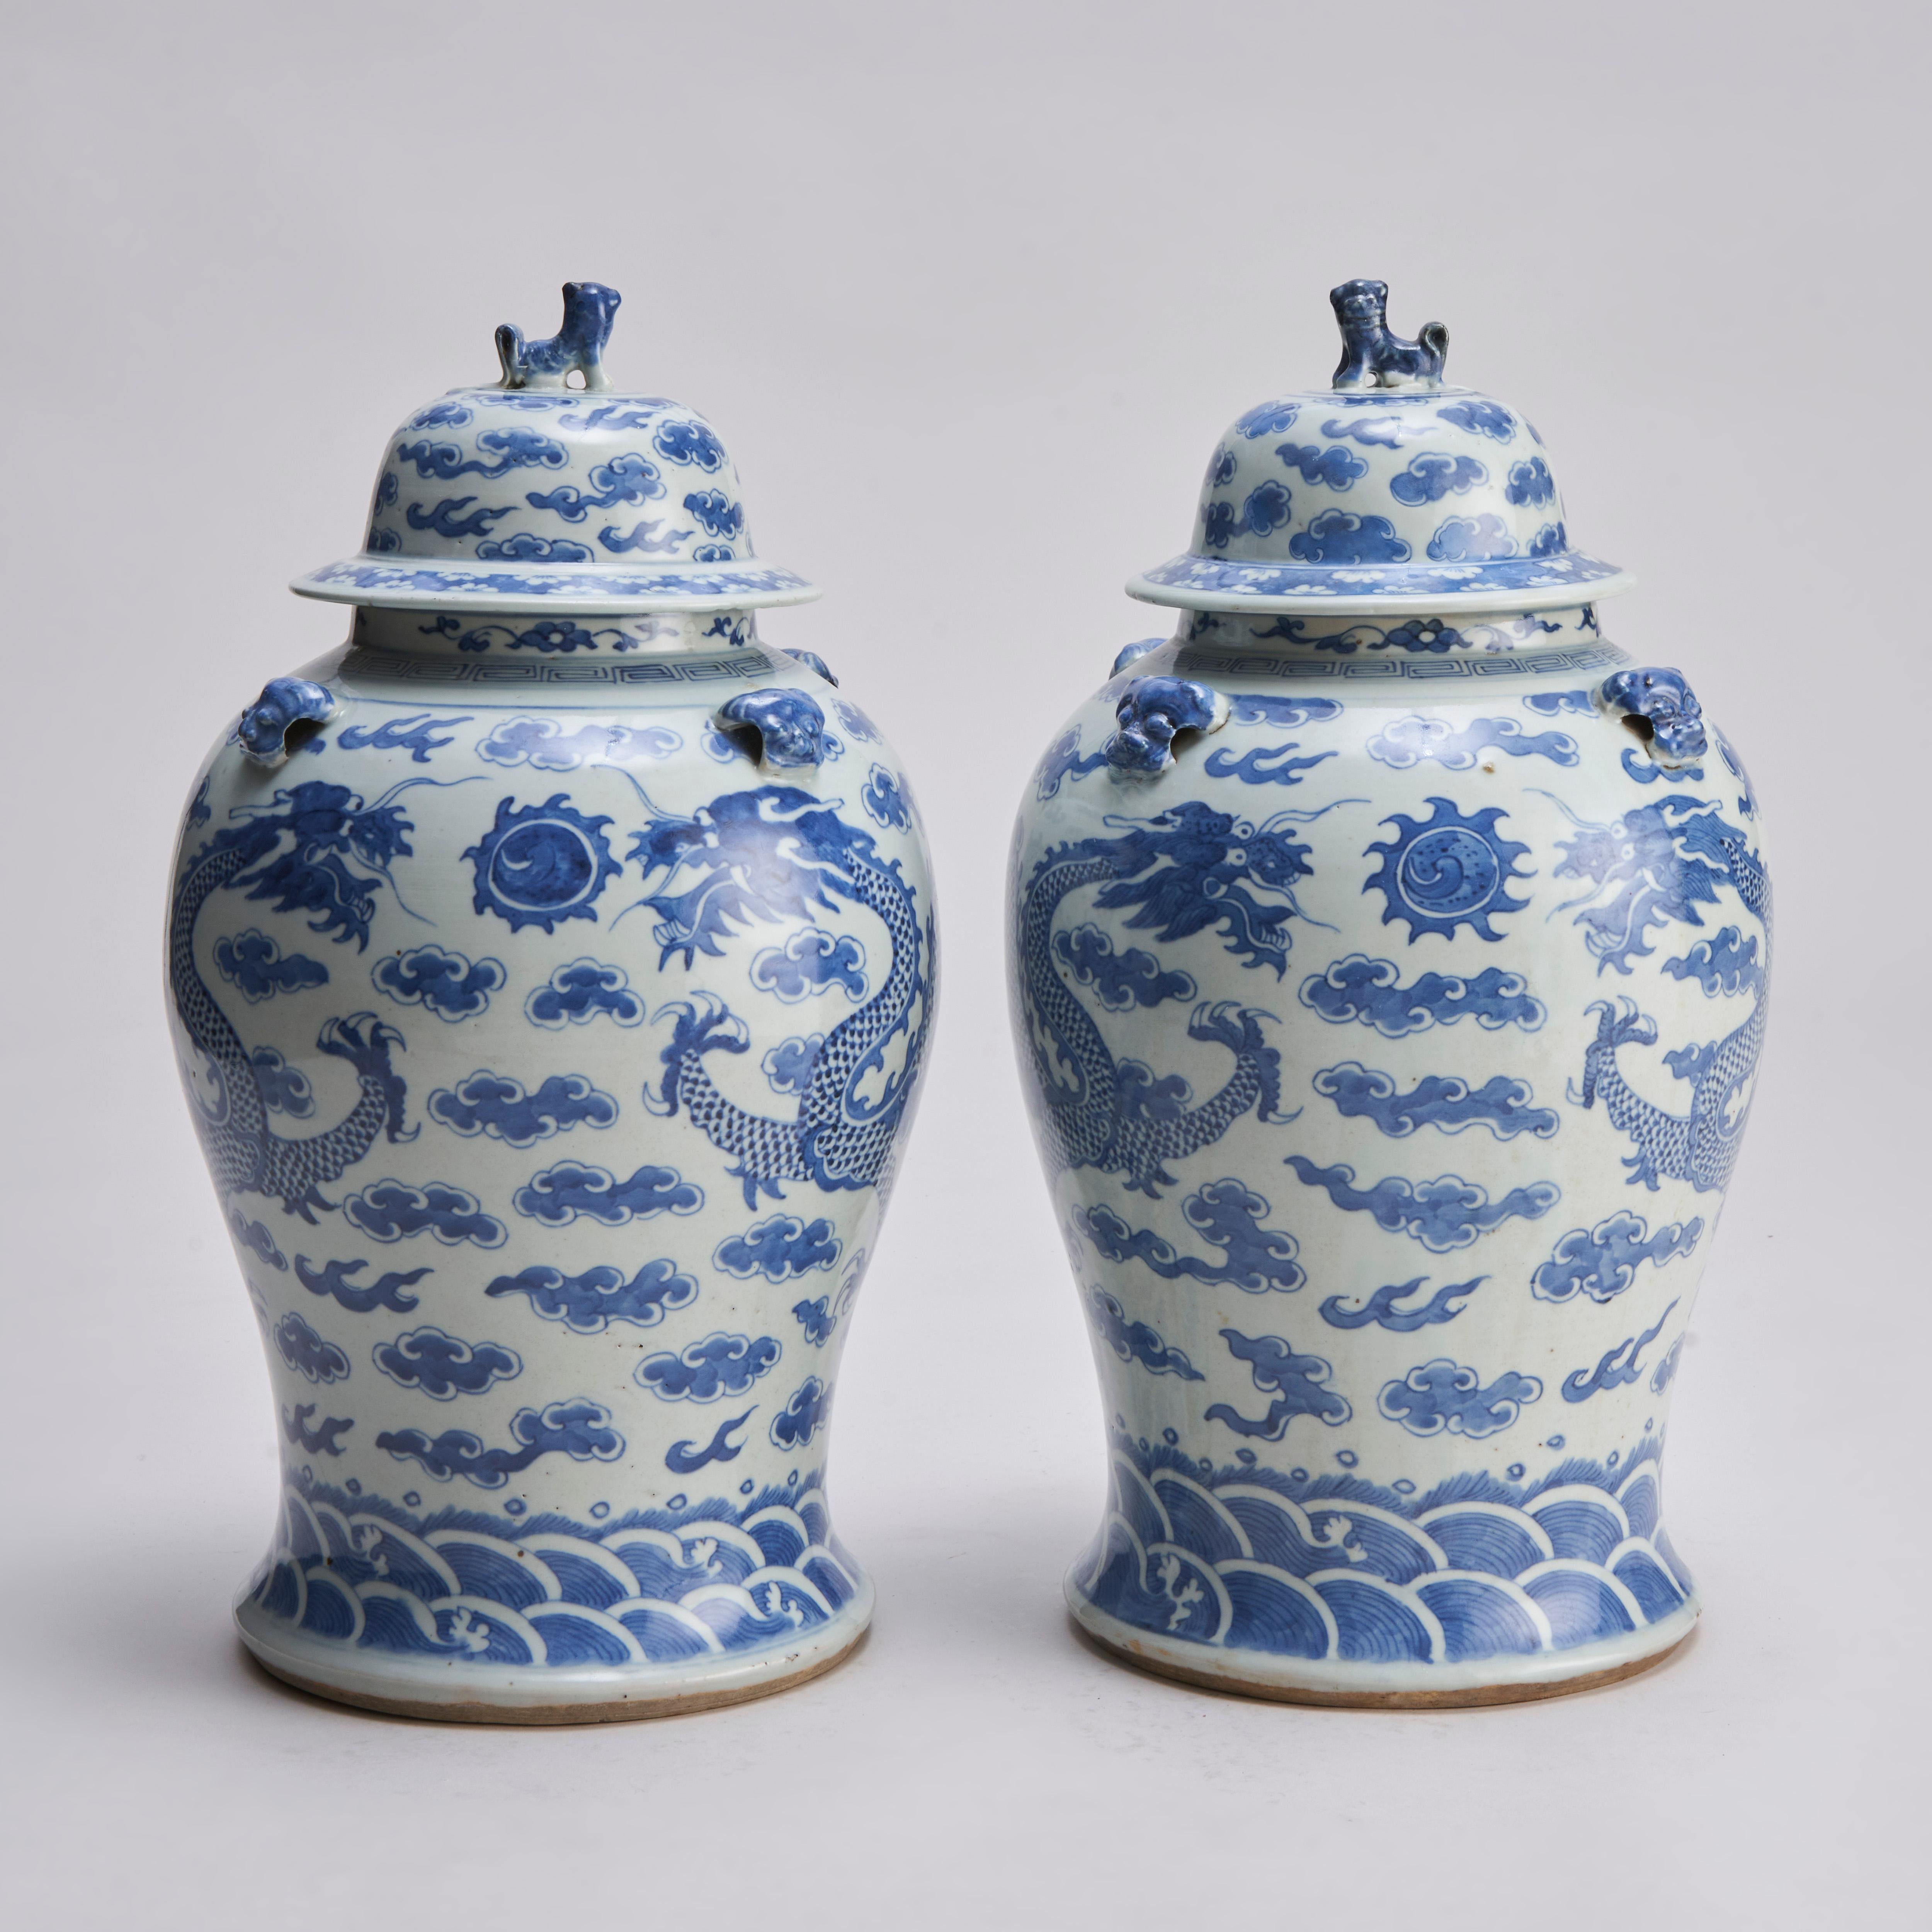 Paire de jarres et de couvercles chinois en bleu et blanc du XIXe siècle, avec des têtes de chien Shi Shi et un décor moulé de chien Shi Shi sur les épaules.

Les vases sont décorés de motifs assortis de dragons poursuivant la perle flamboyante, sur